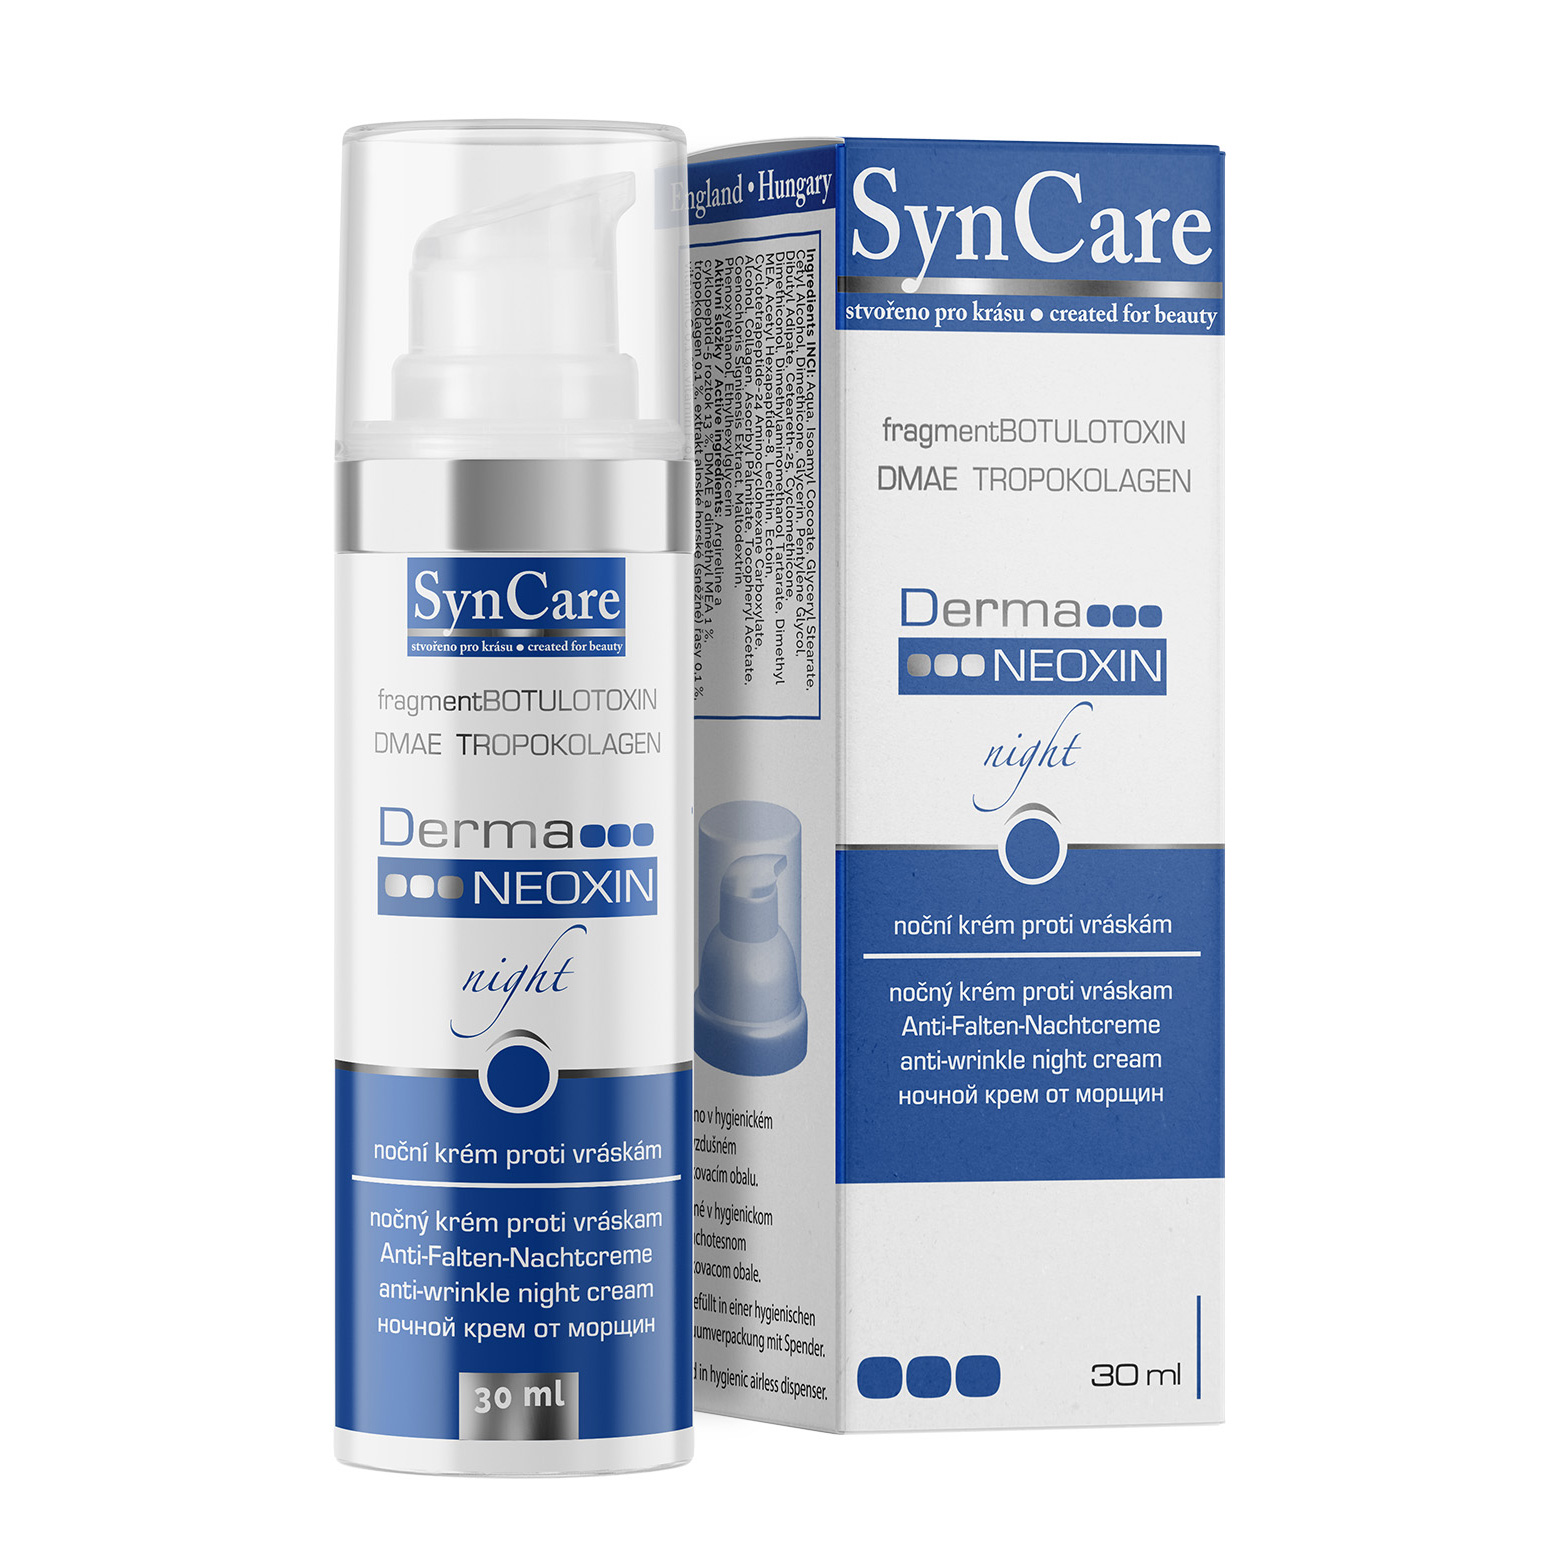 SynCare DermaNEOXIN krém 13%